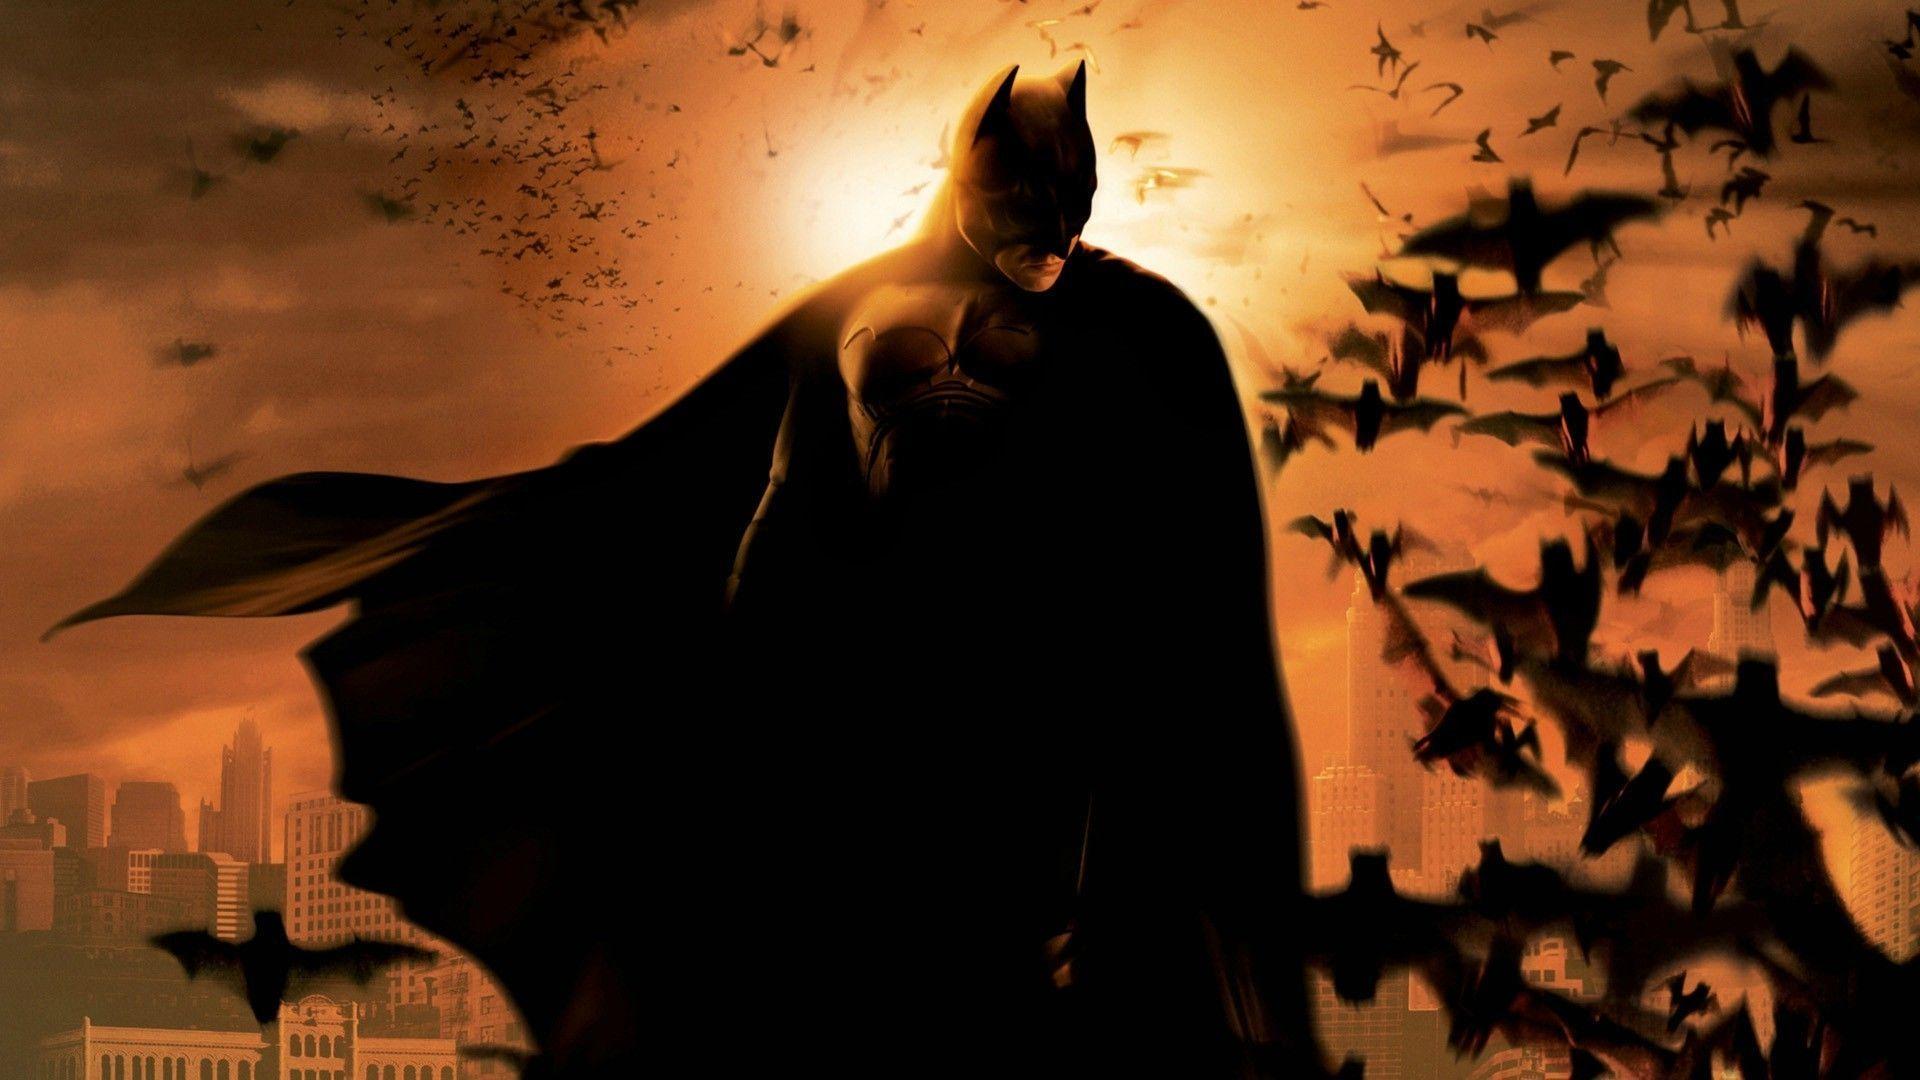 digital art movies batman begins batman bats wallpaper and background